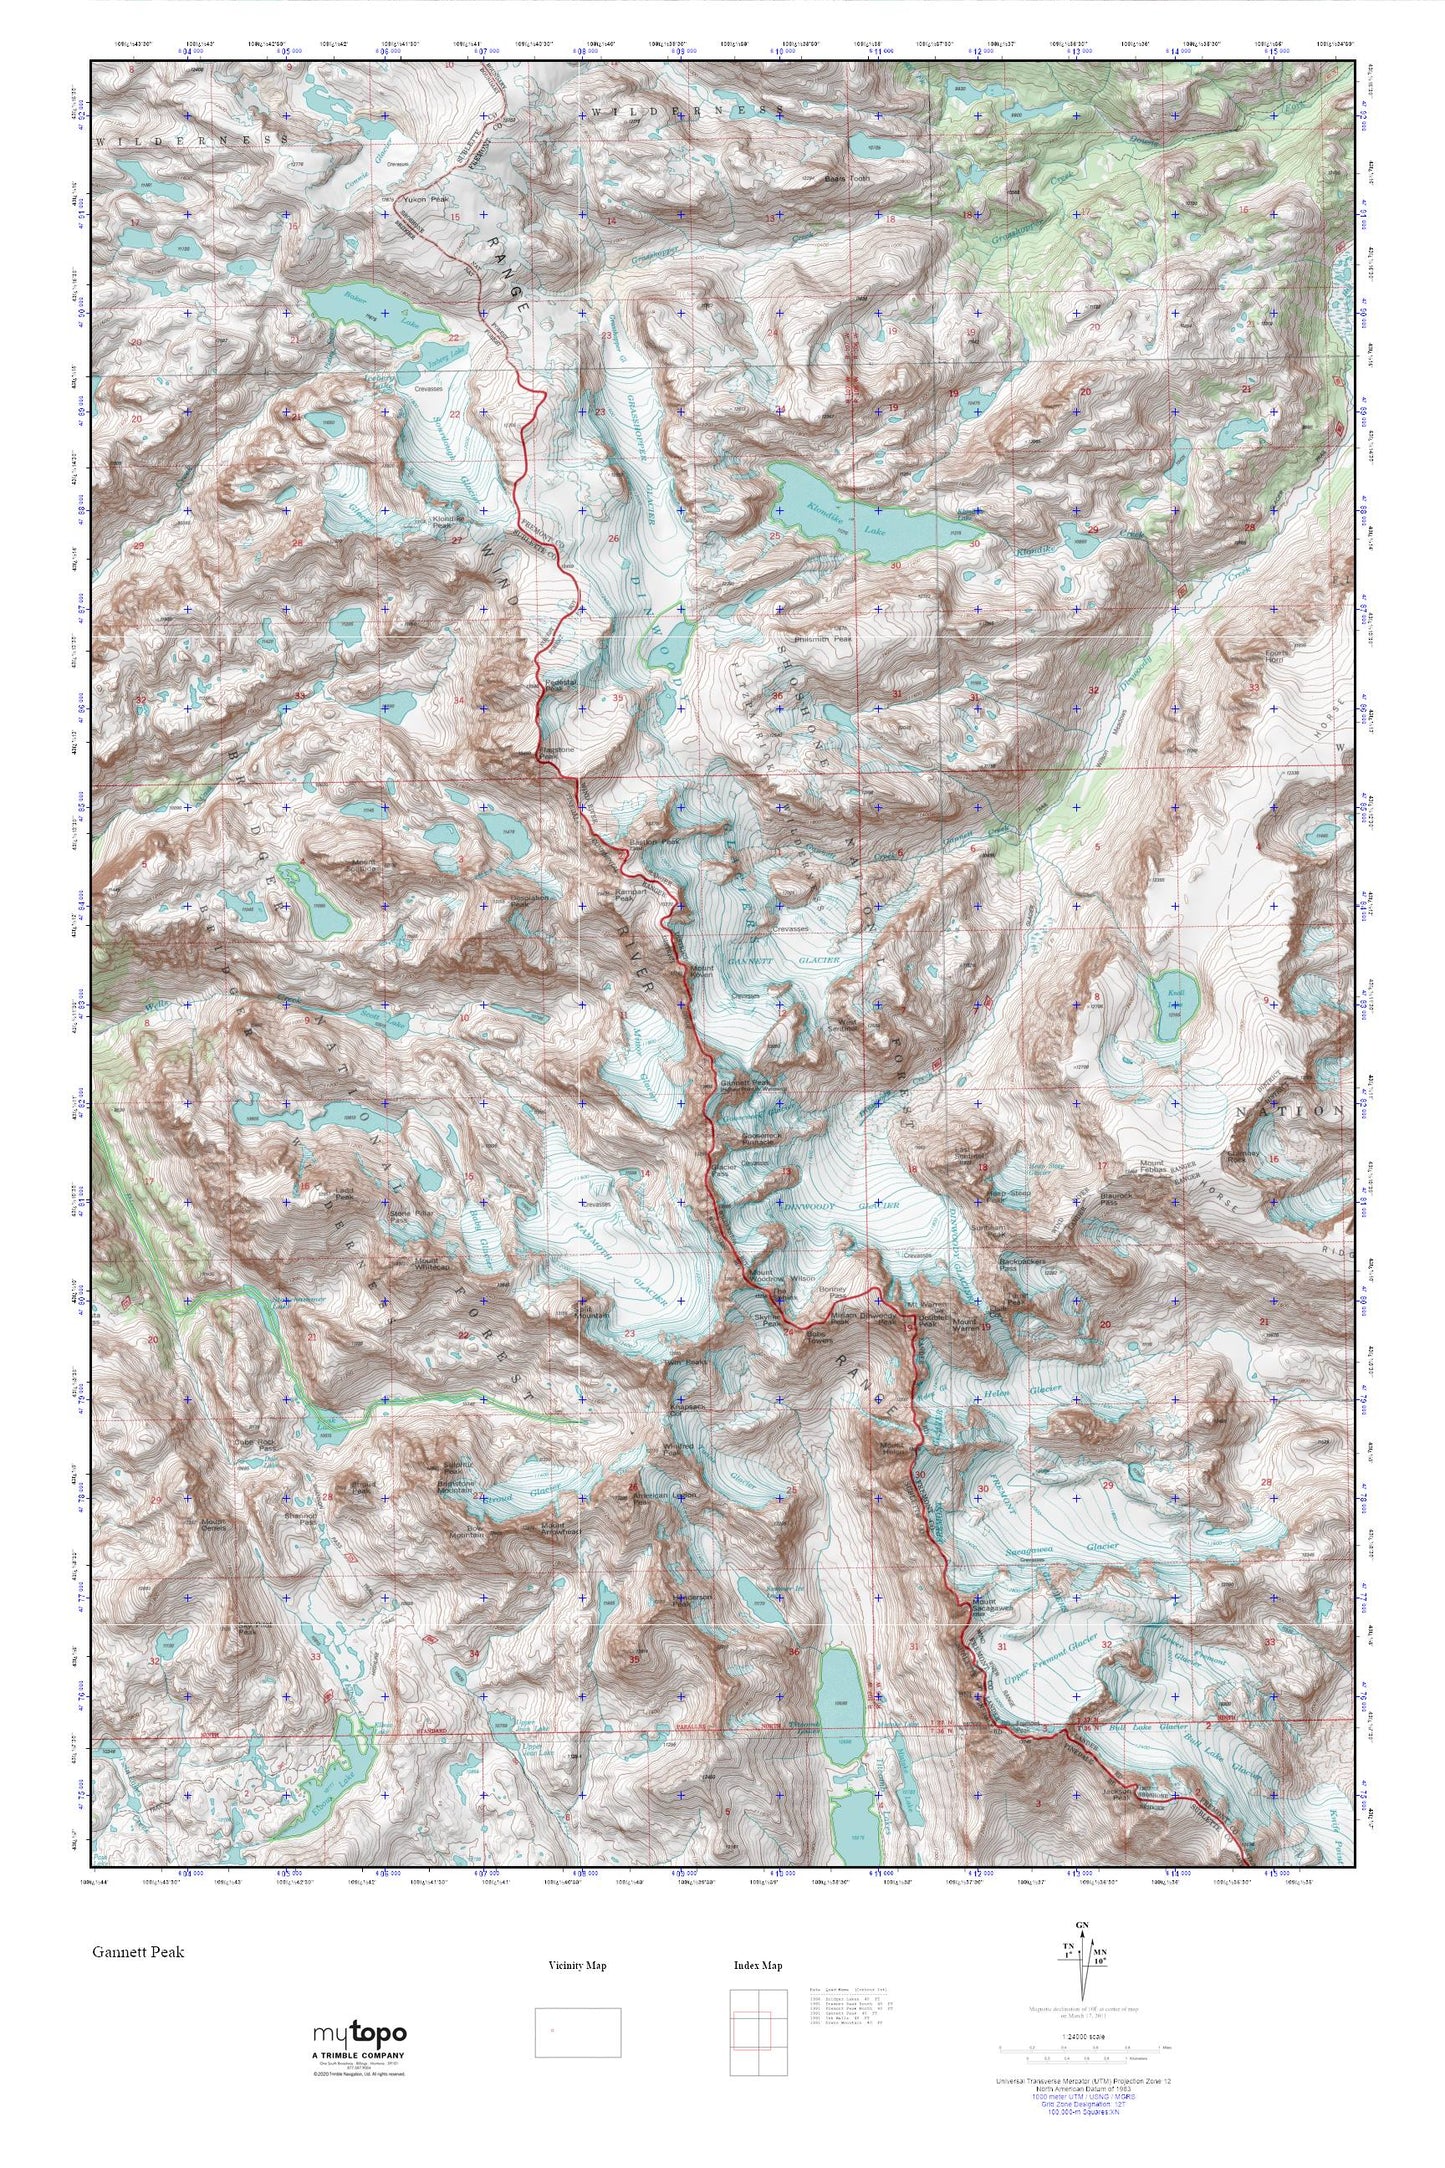 Gannett Peak MyTopo Explorer Series Map Image